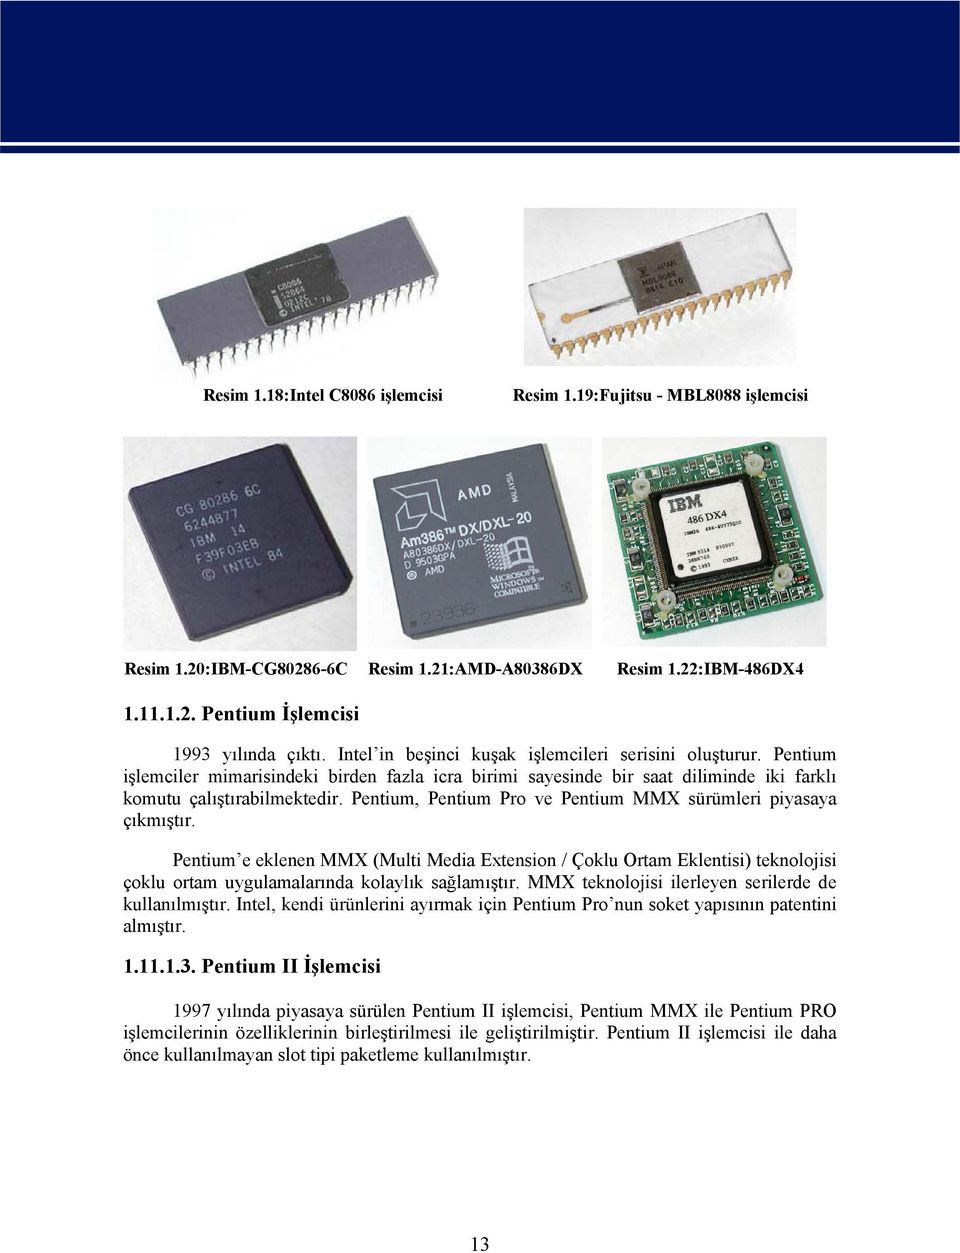 Pentium, Pentium Pro ve Pentium MMX sürümleri piyasaya çıkmıştır. Pentium e eklenen MMX (Multi Media Extension / Çoklu Ortam Eklentisi) teknolojisi çoklu ortam uygulamalarında kolaylık sağlamıştır.